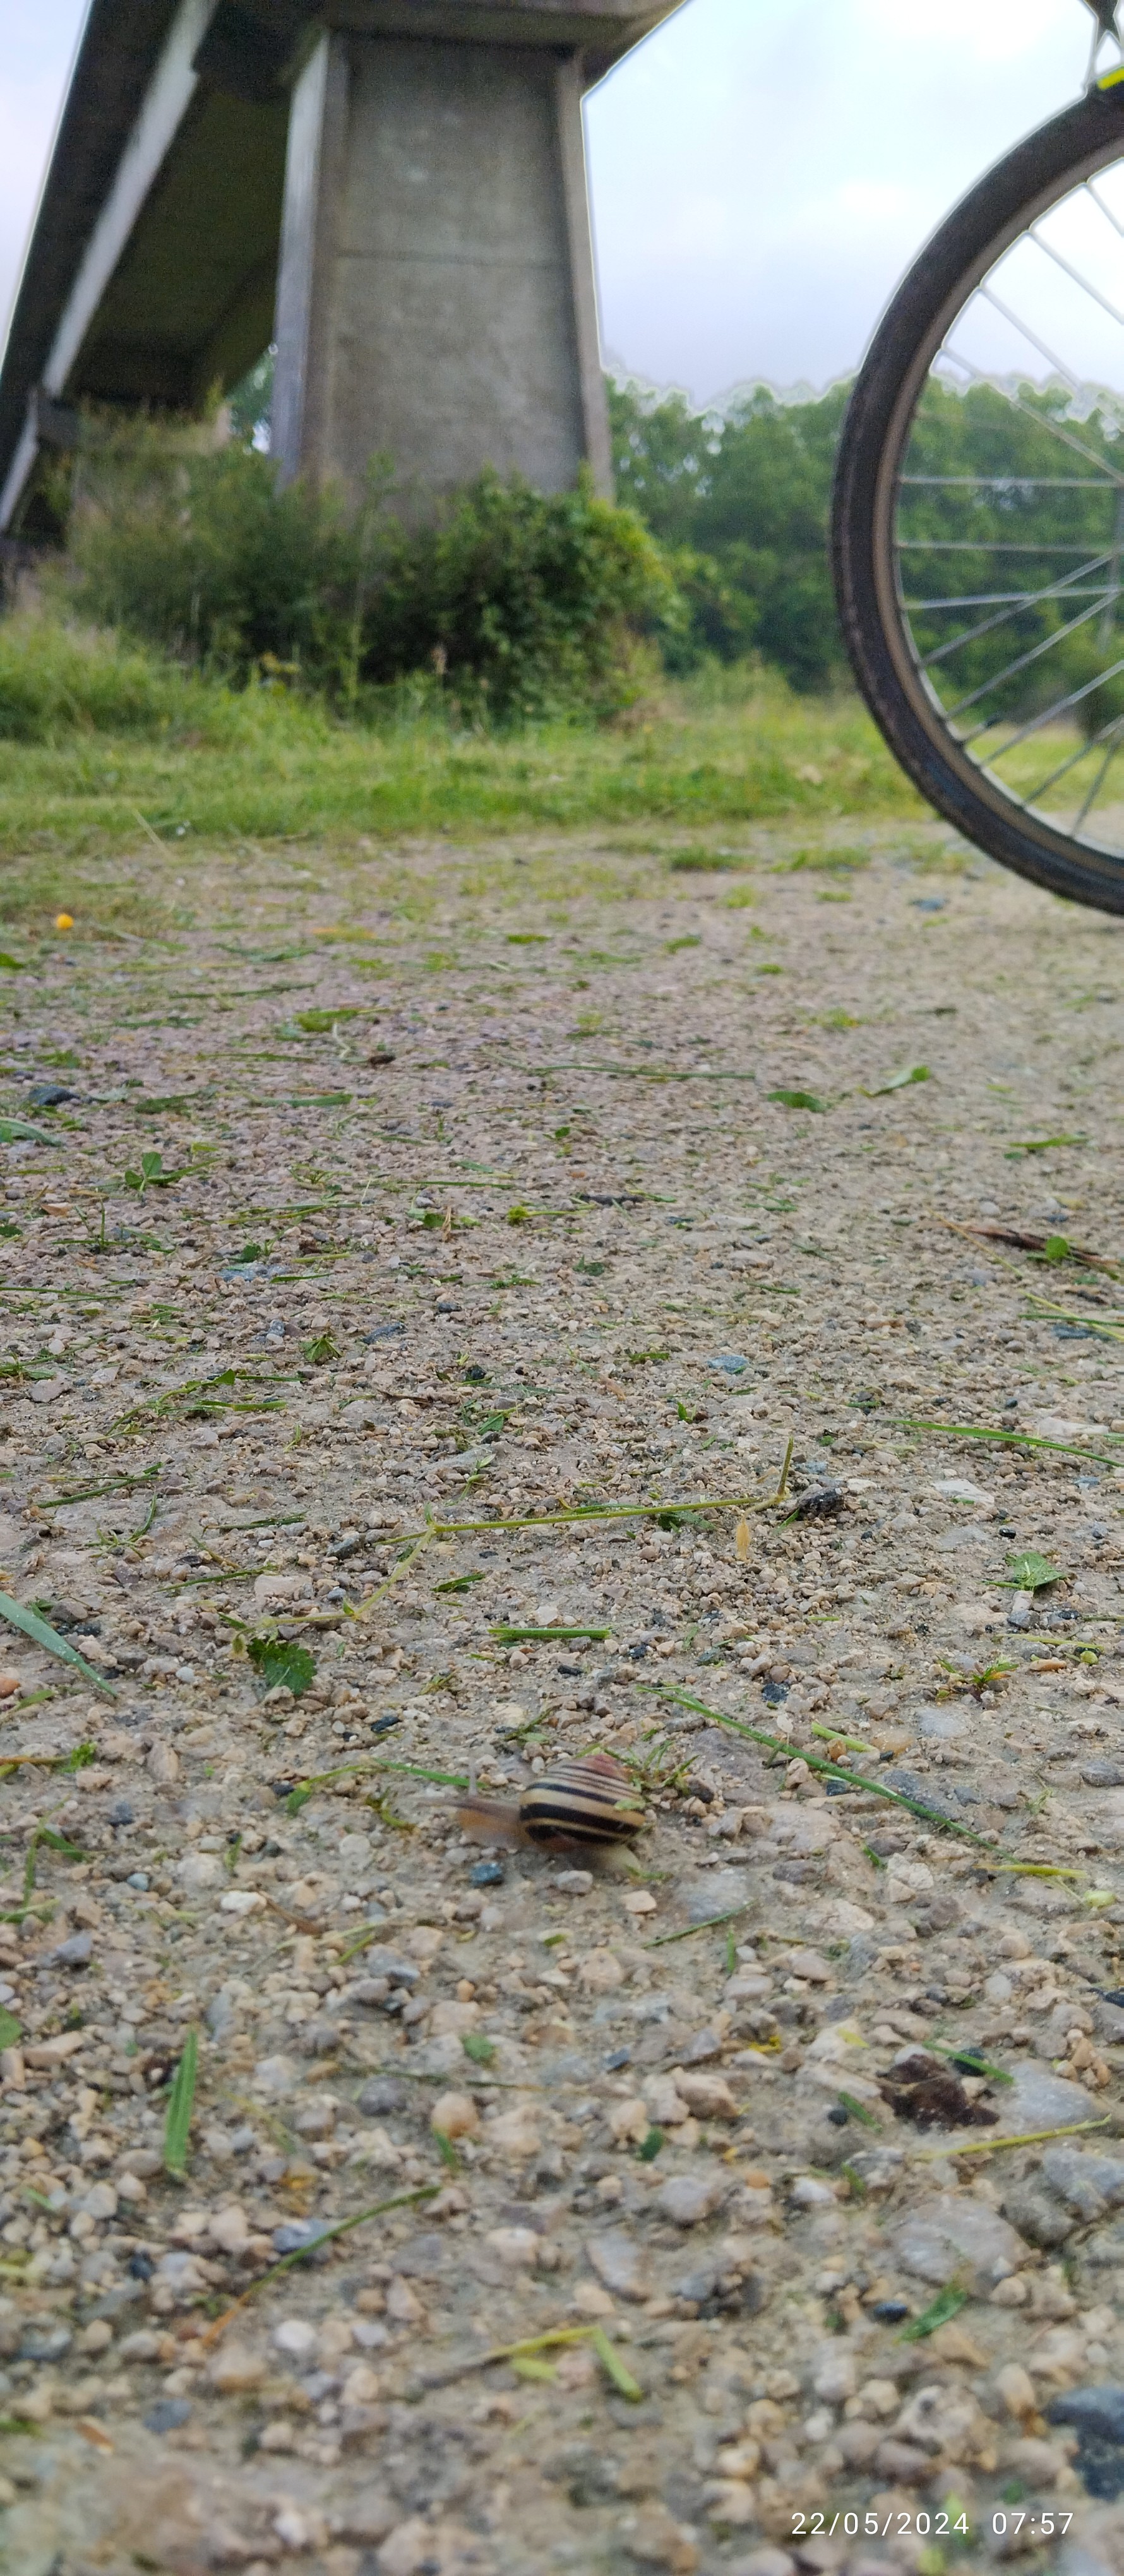 Un escargot (jaune et noir) glisse sous le rail de béton de l'aérotrain, un bout de vélo se donne à voir. 